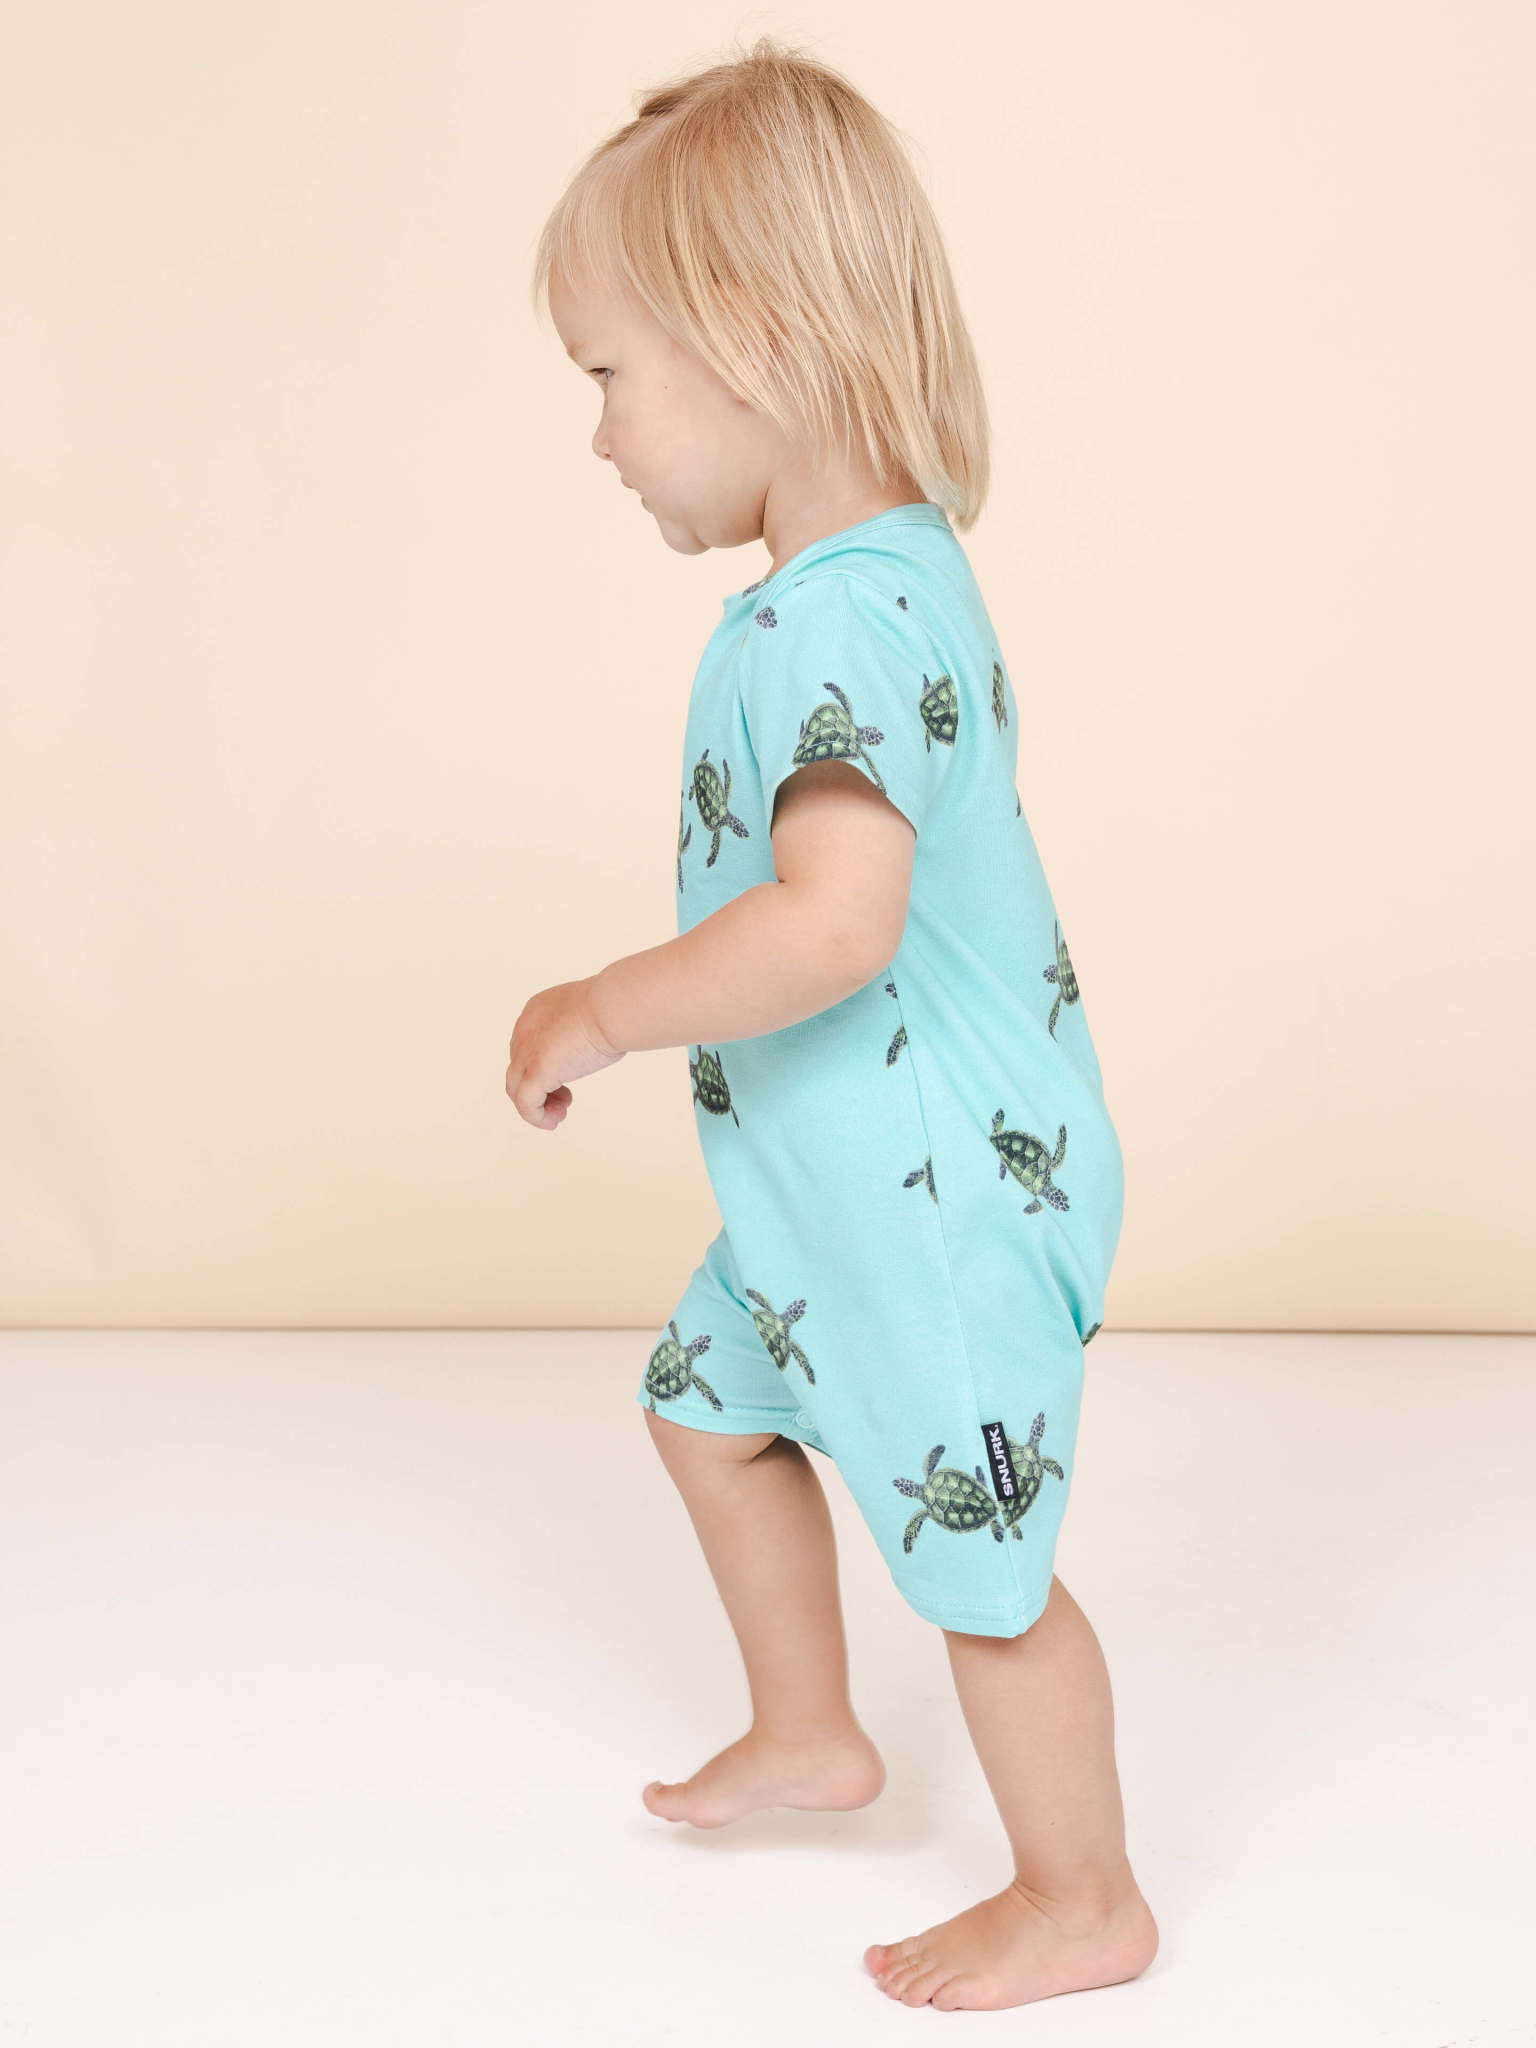 SNURK Snurk homewear - Sea Turtles Playsuit Baby - 80